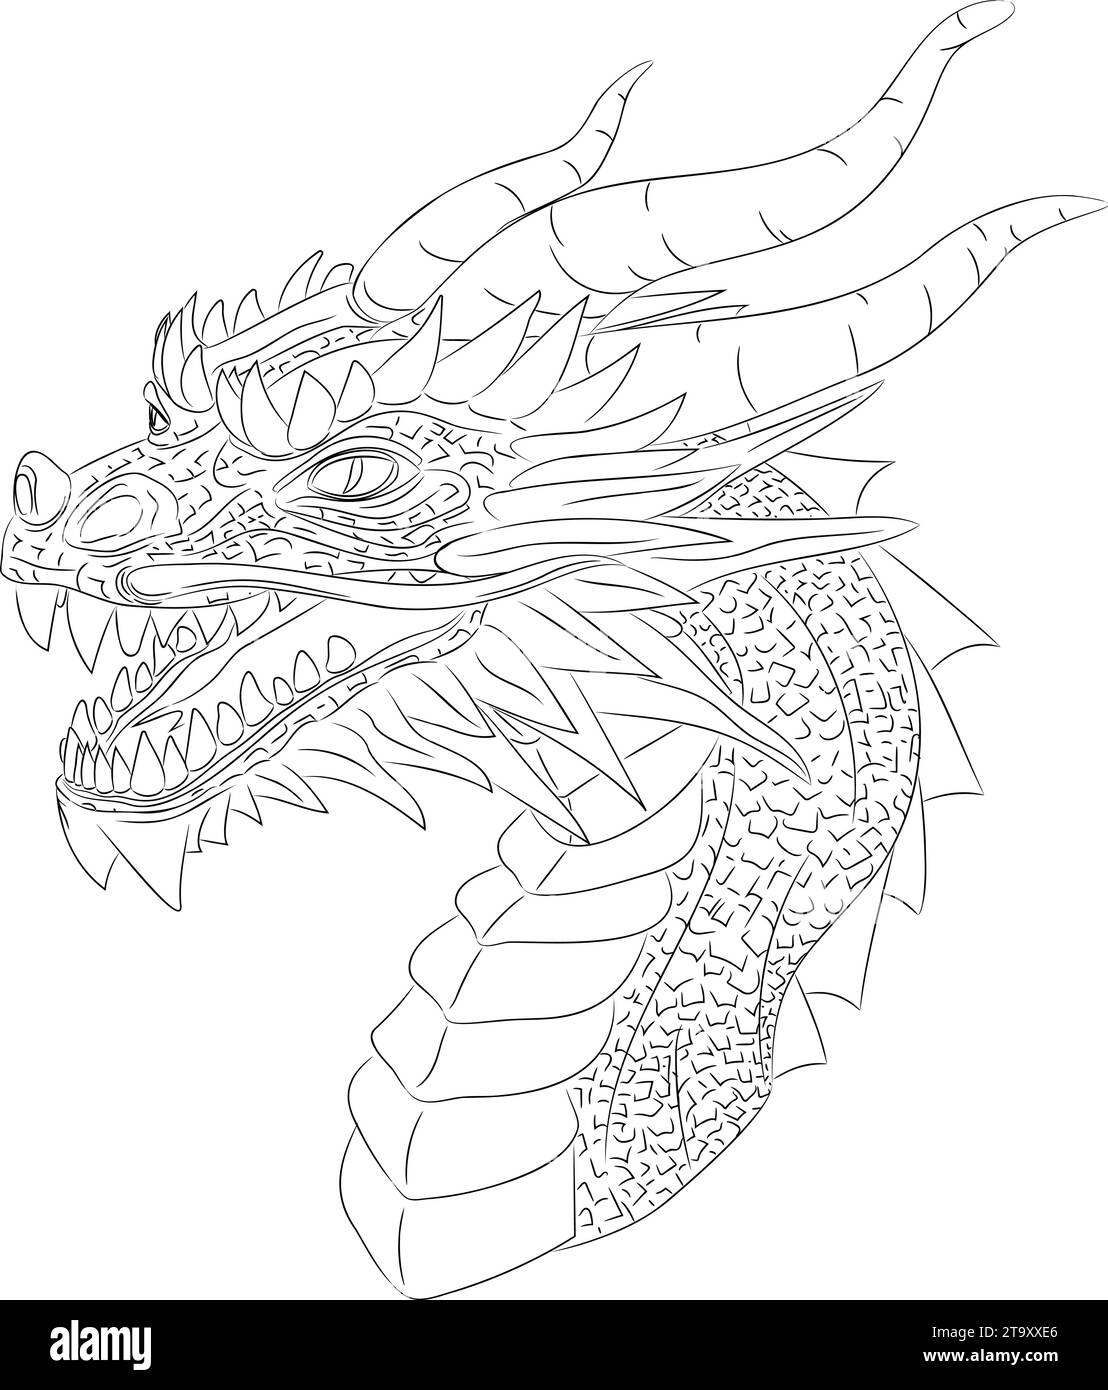 Disegno in linea di drago in legno - simbolo di 2024 illustrazione vettoriale di una testa di drago in legno verde con collo. Testa con corna, denti, baffi Illustrazione Vettoriale